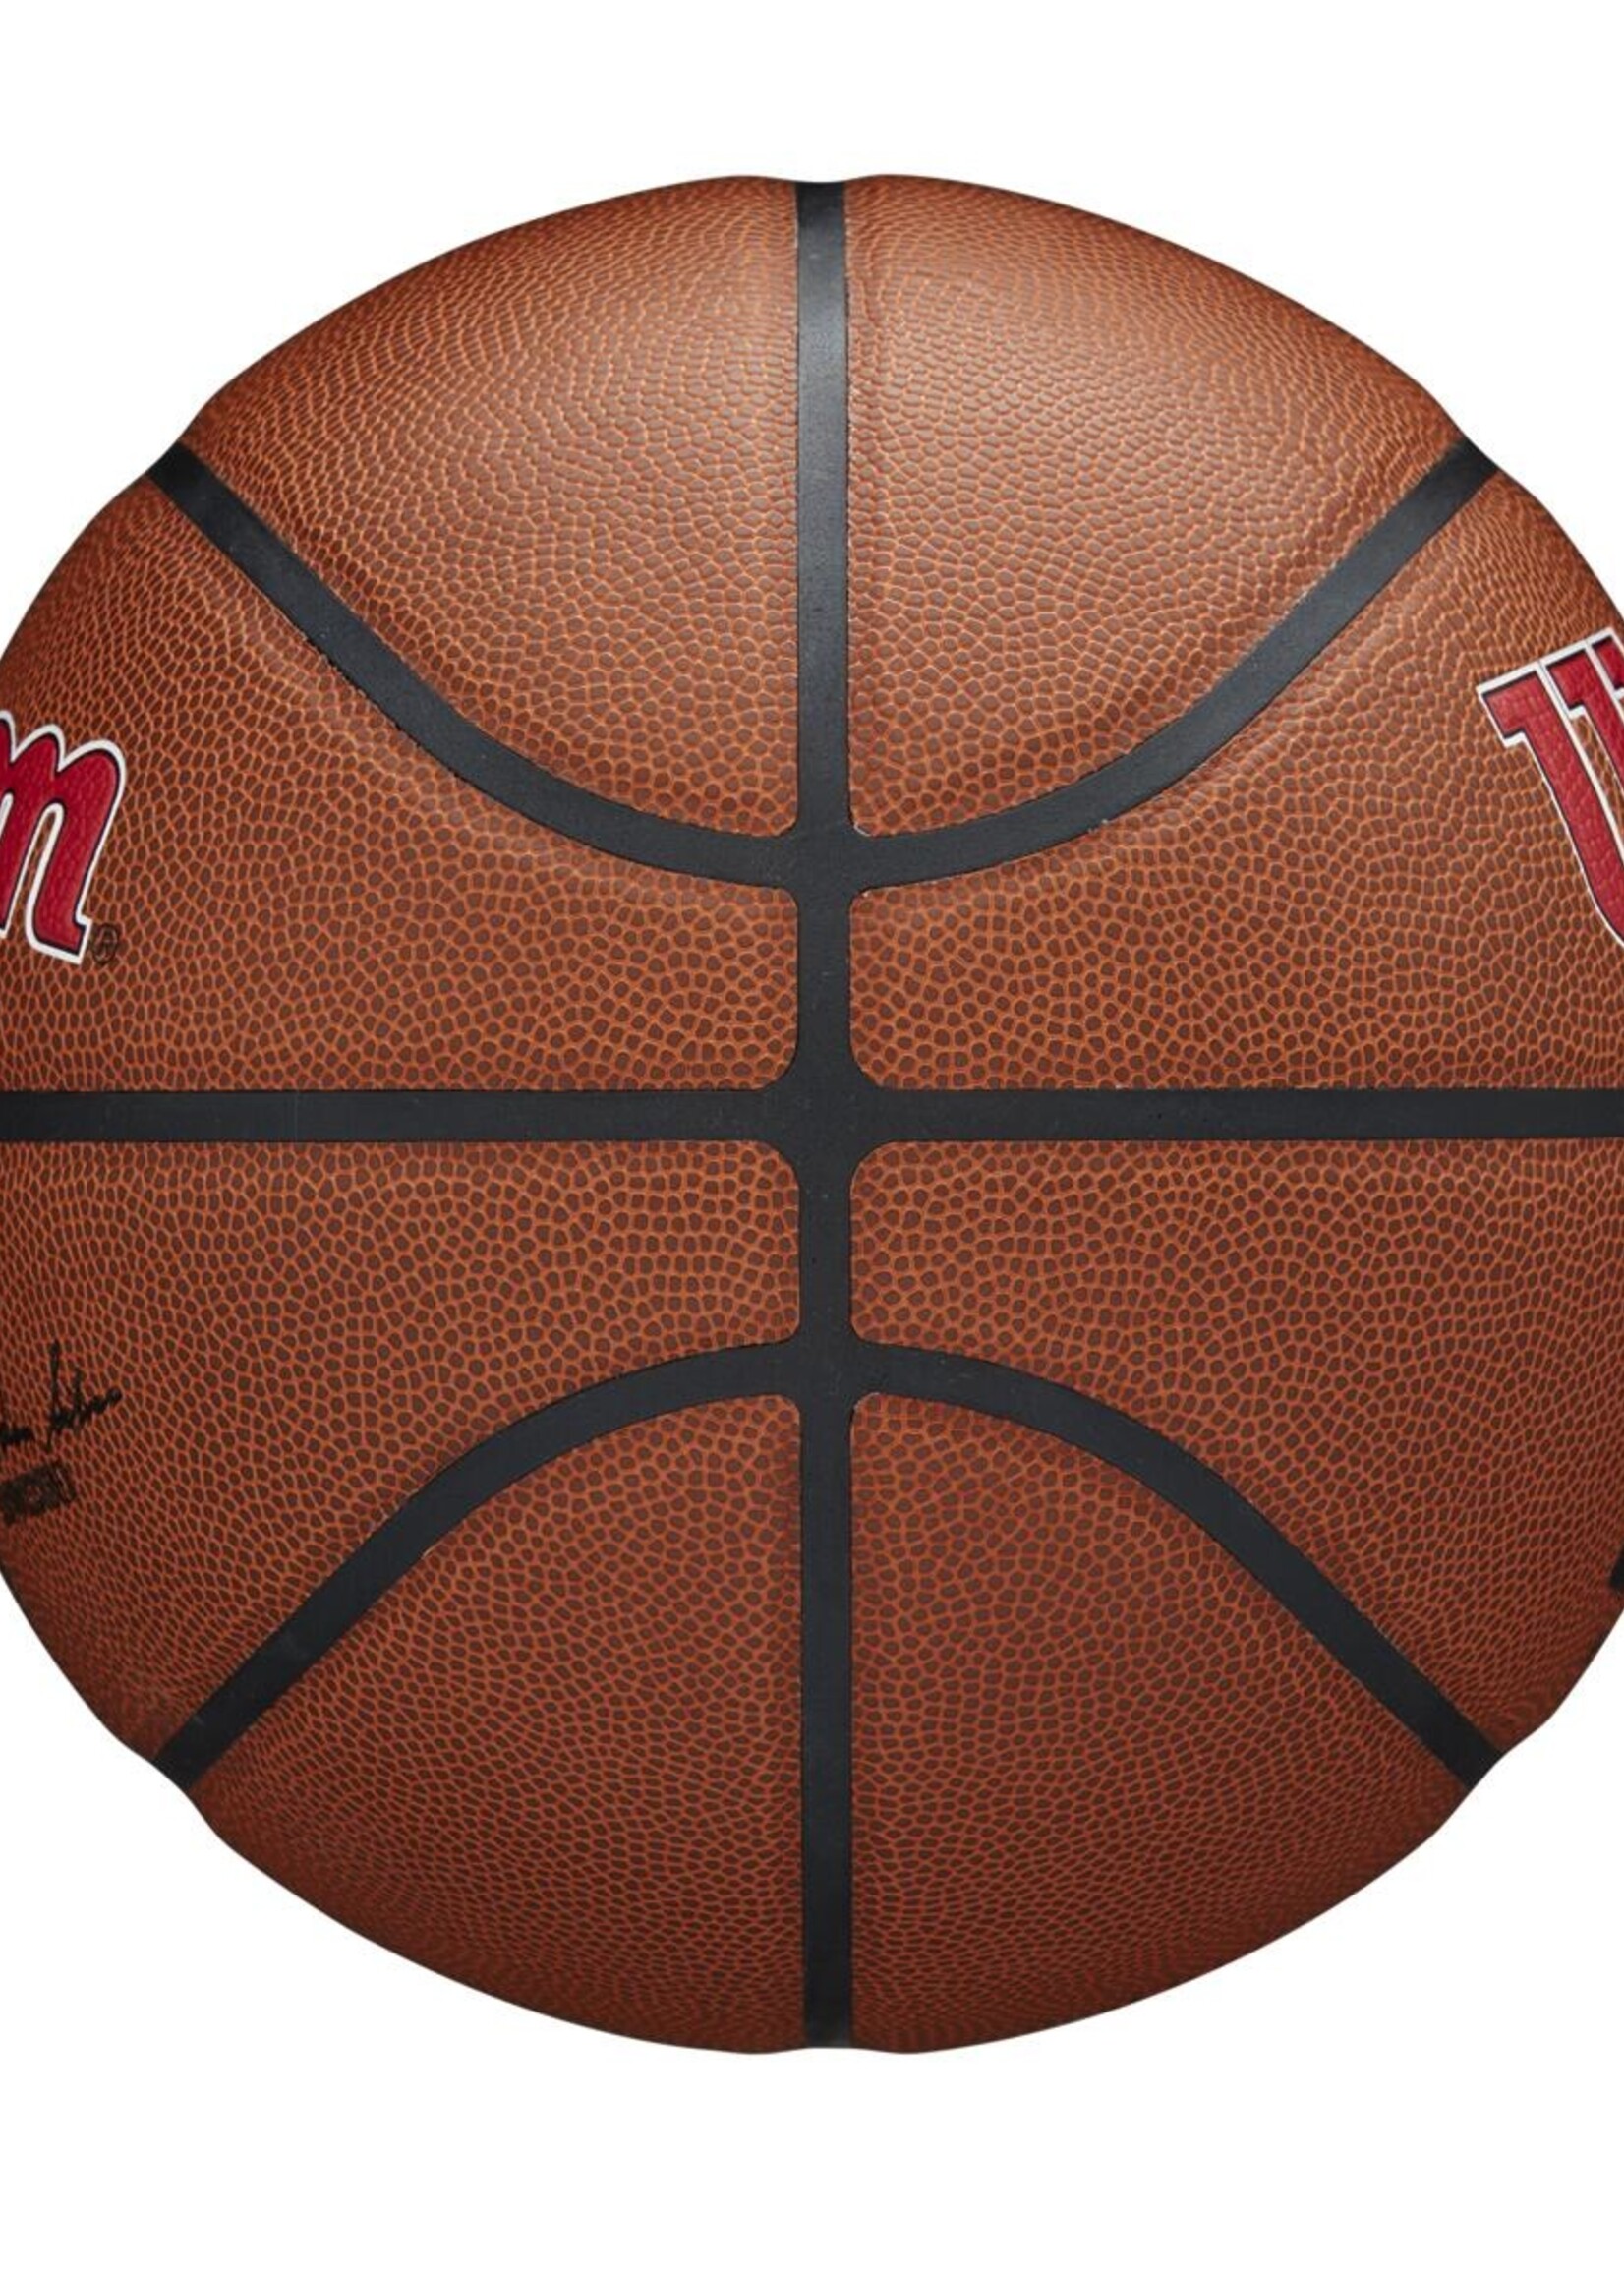 Wilson Wilson NBA TORONTO RAPTORS Composite Indoor / Outdoor Basketbal (7)